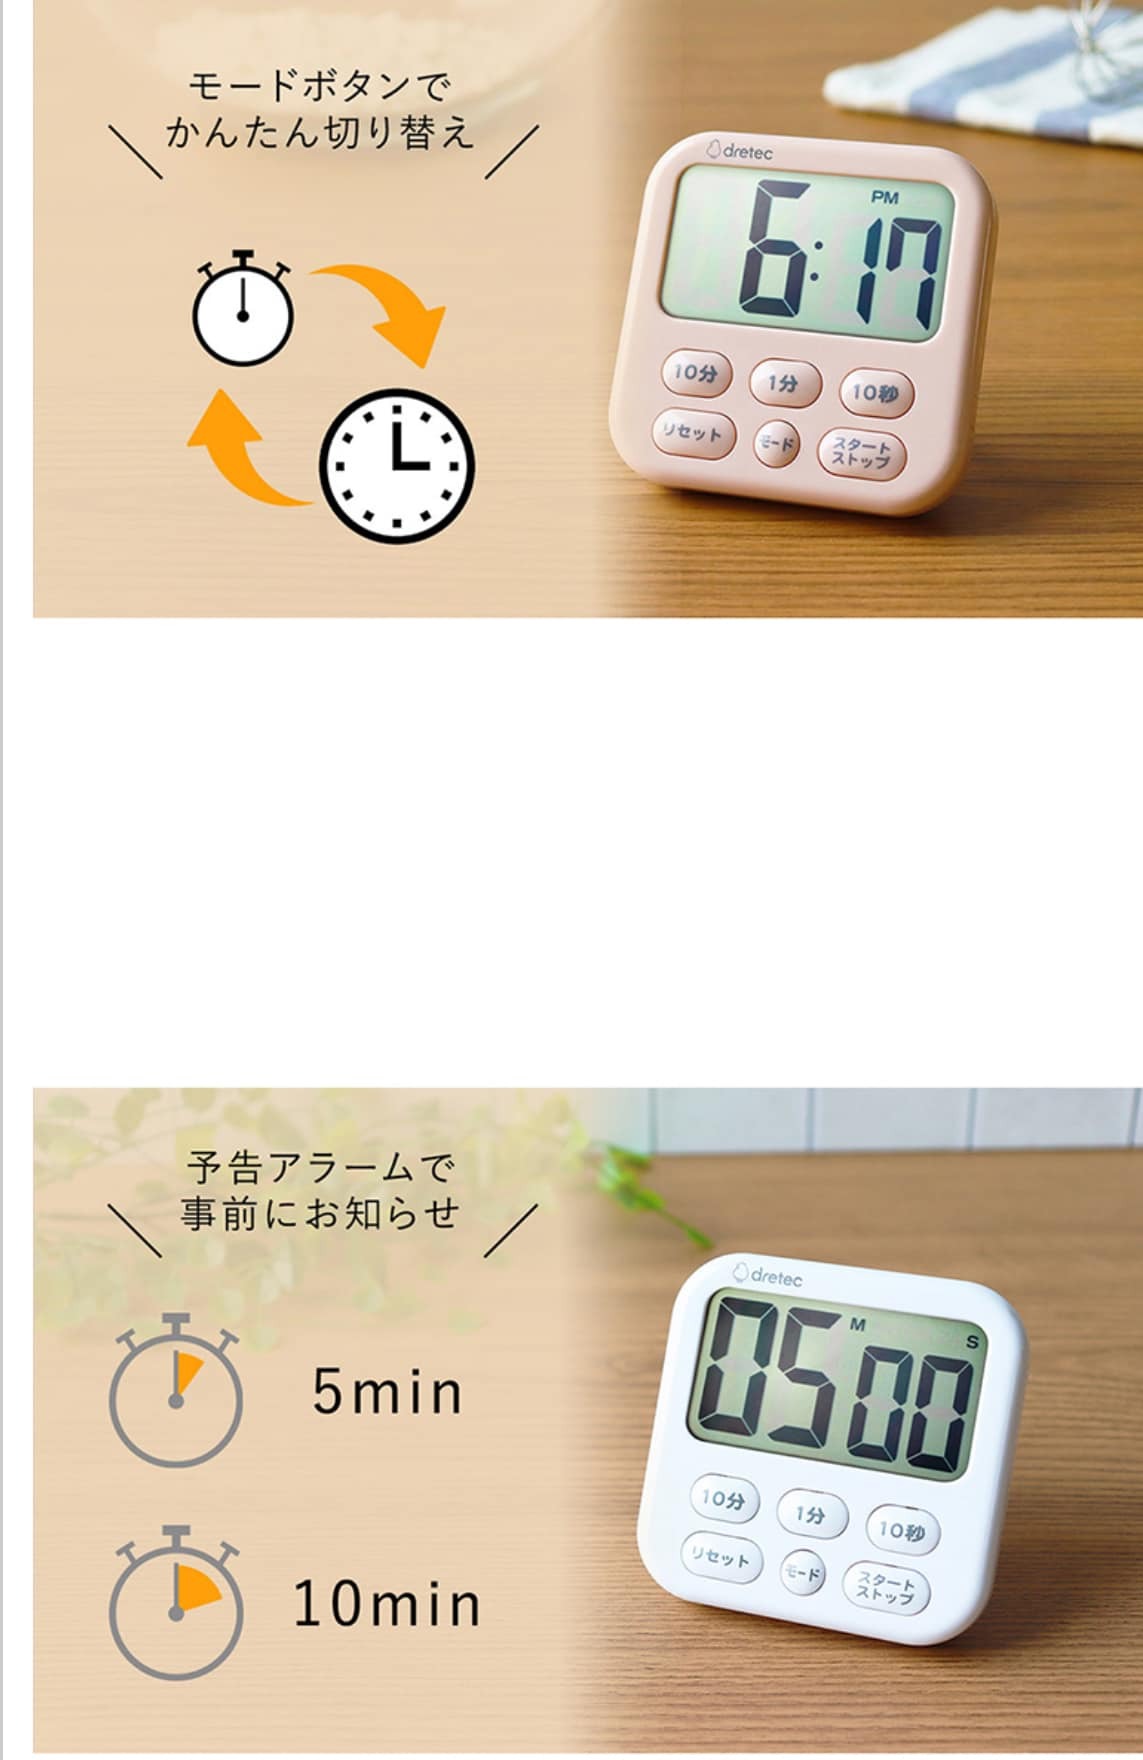 日本餐具 DRETEC大螢幕時鐘烹飪料理計時器 王球餐具 (3)